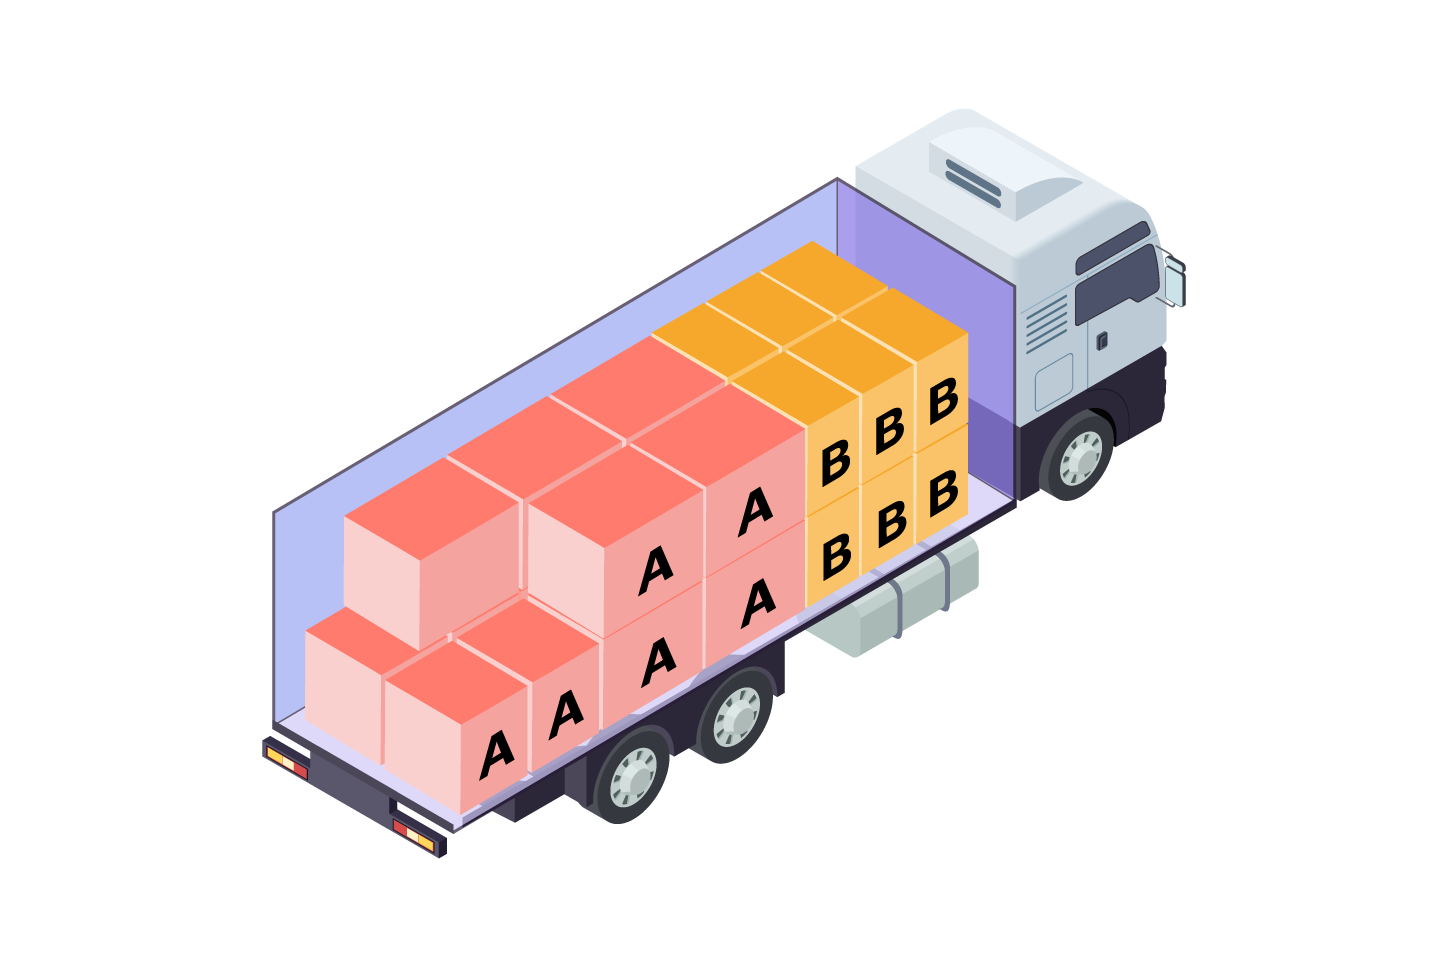 Représentation d’un chargement en commande groupée dans un camion. Les cartons proviennent de clients différents.